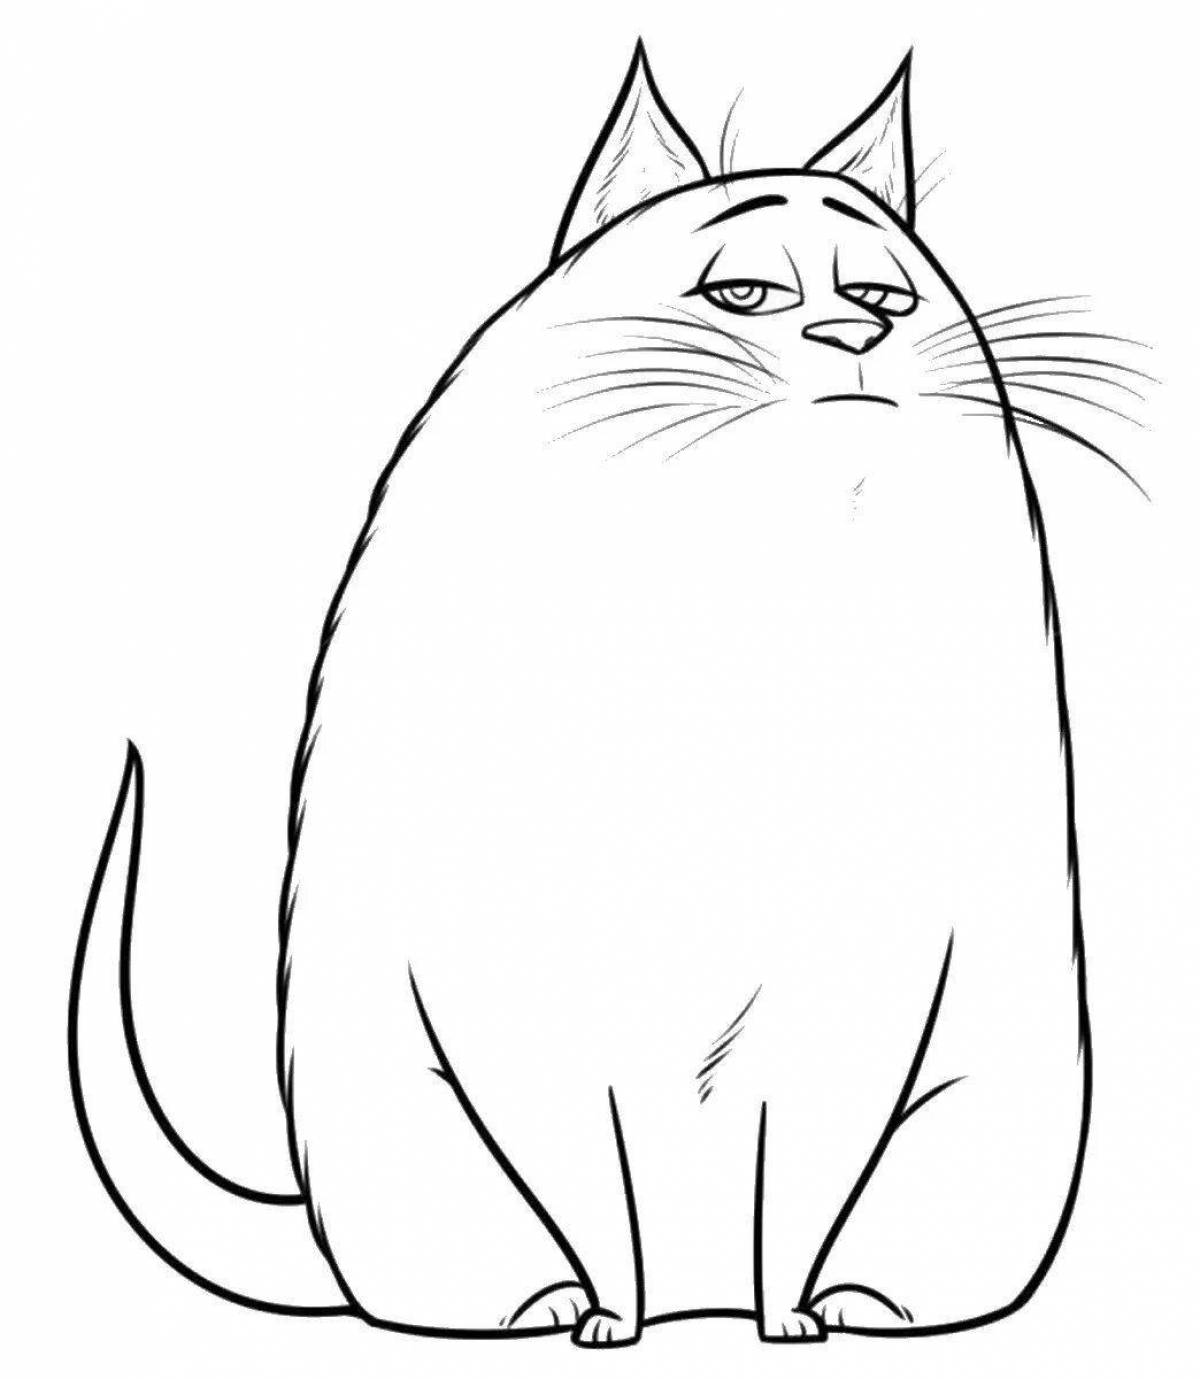 Coloring cute fat cat